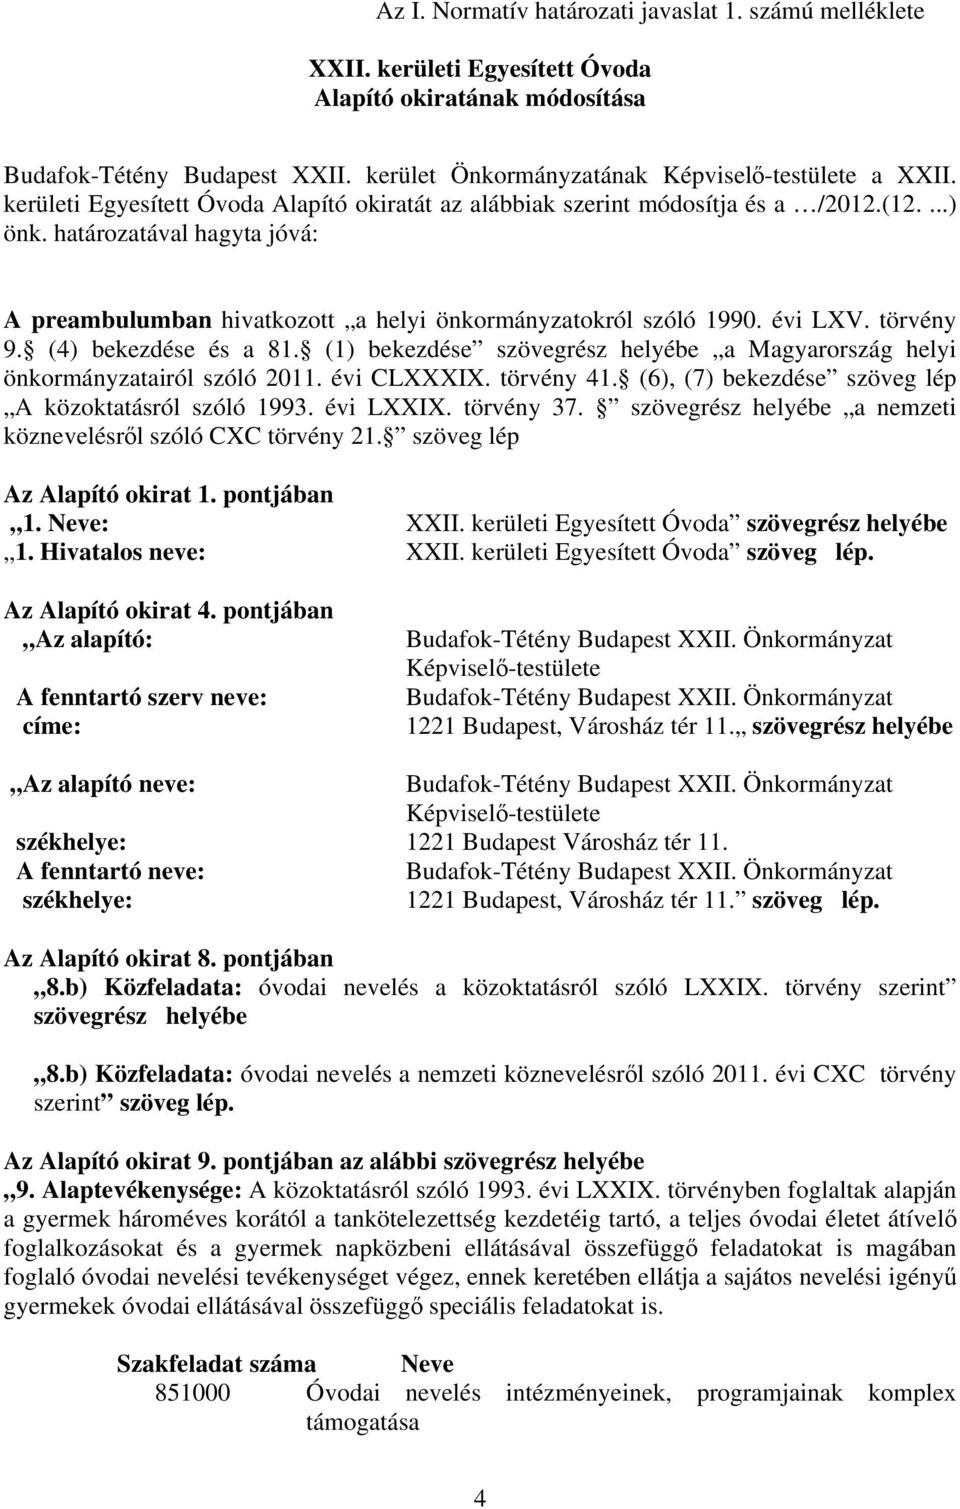 törvény 9. (4) bekezdése és a 81. (1) bekezdése szövegrész helyébe a Magyarország helyi önkormányzatairól szóló 2011. évi CLXXXIX. törvény 41. (6), (7) bekezdése szöveg lép A közoktatásról szóló 1993.